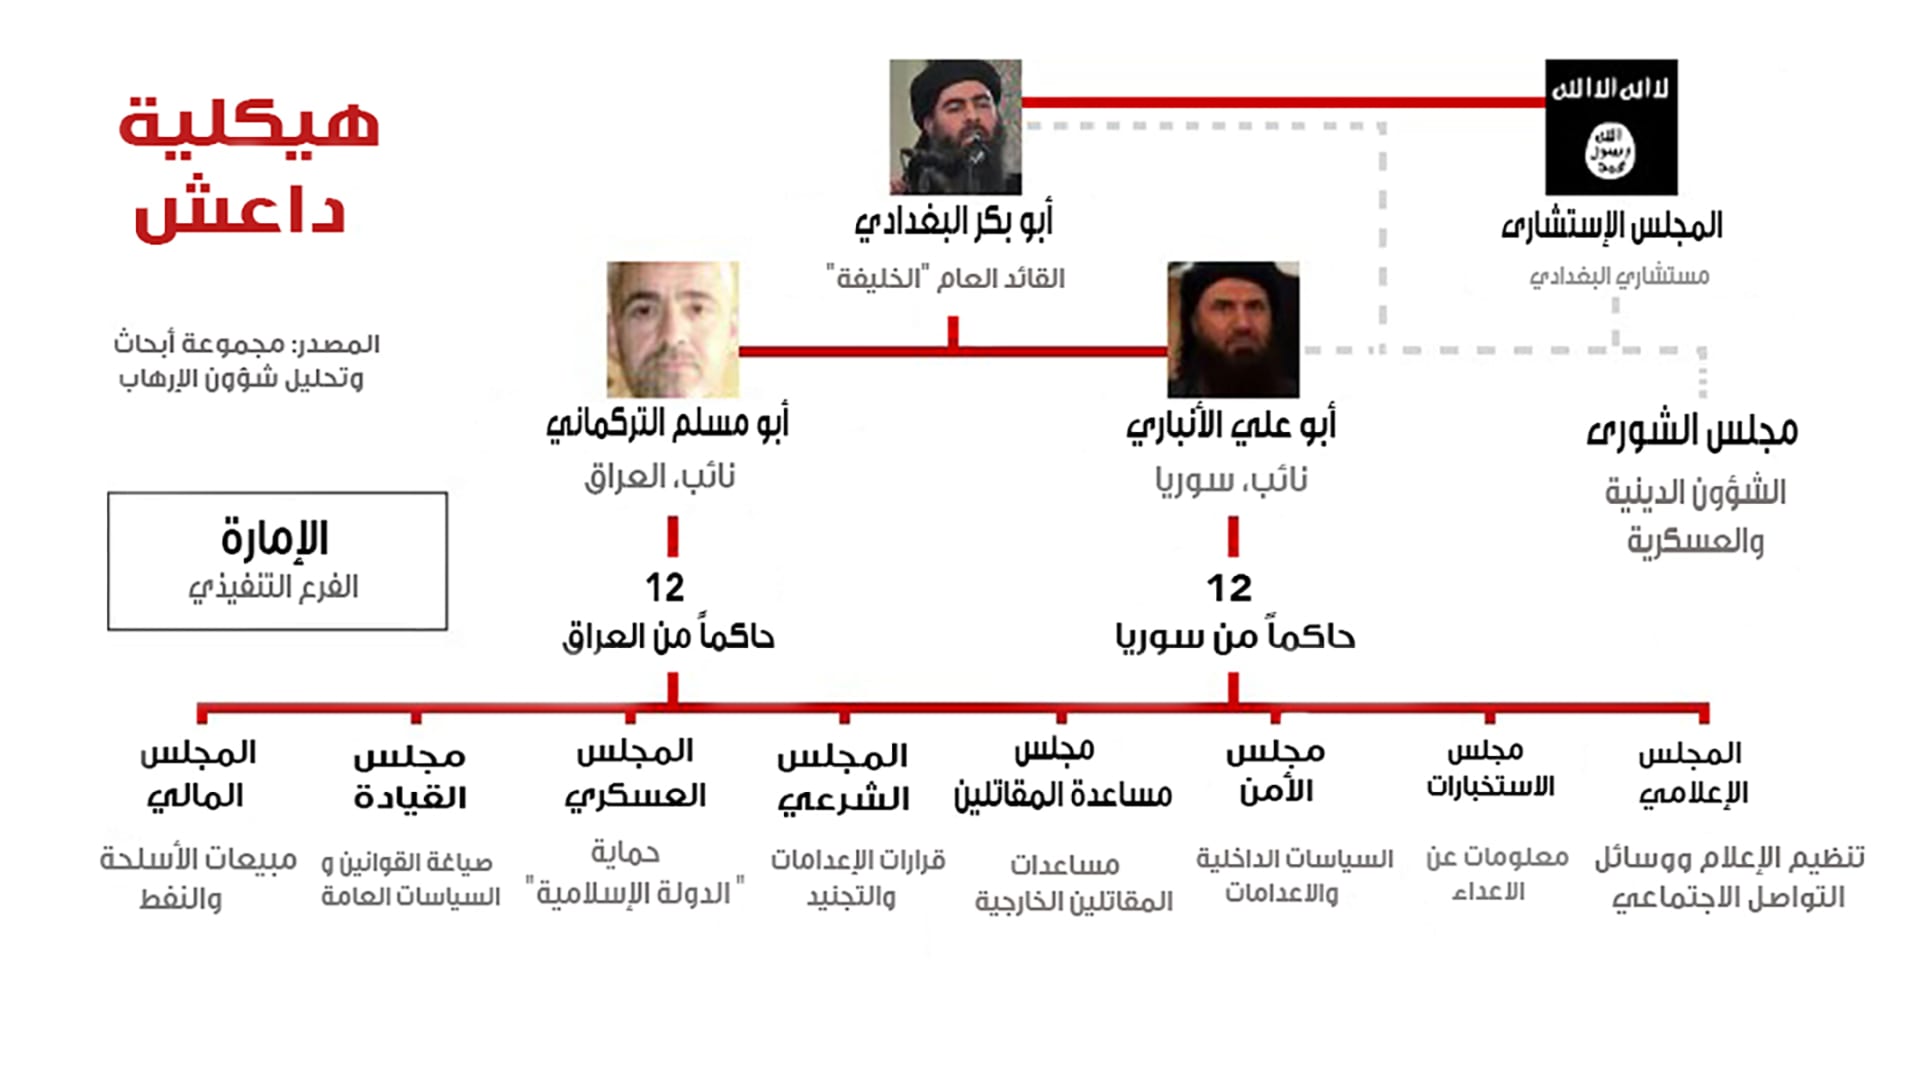 هيكلية داعش.. كيف تدير "دولتها الإسلامية" من ريع النفط إلى قطع الرؤوس؟